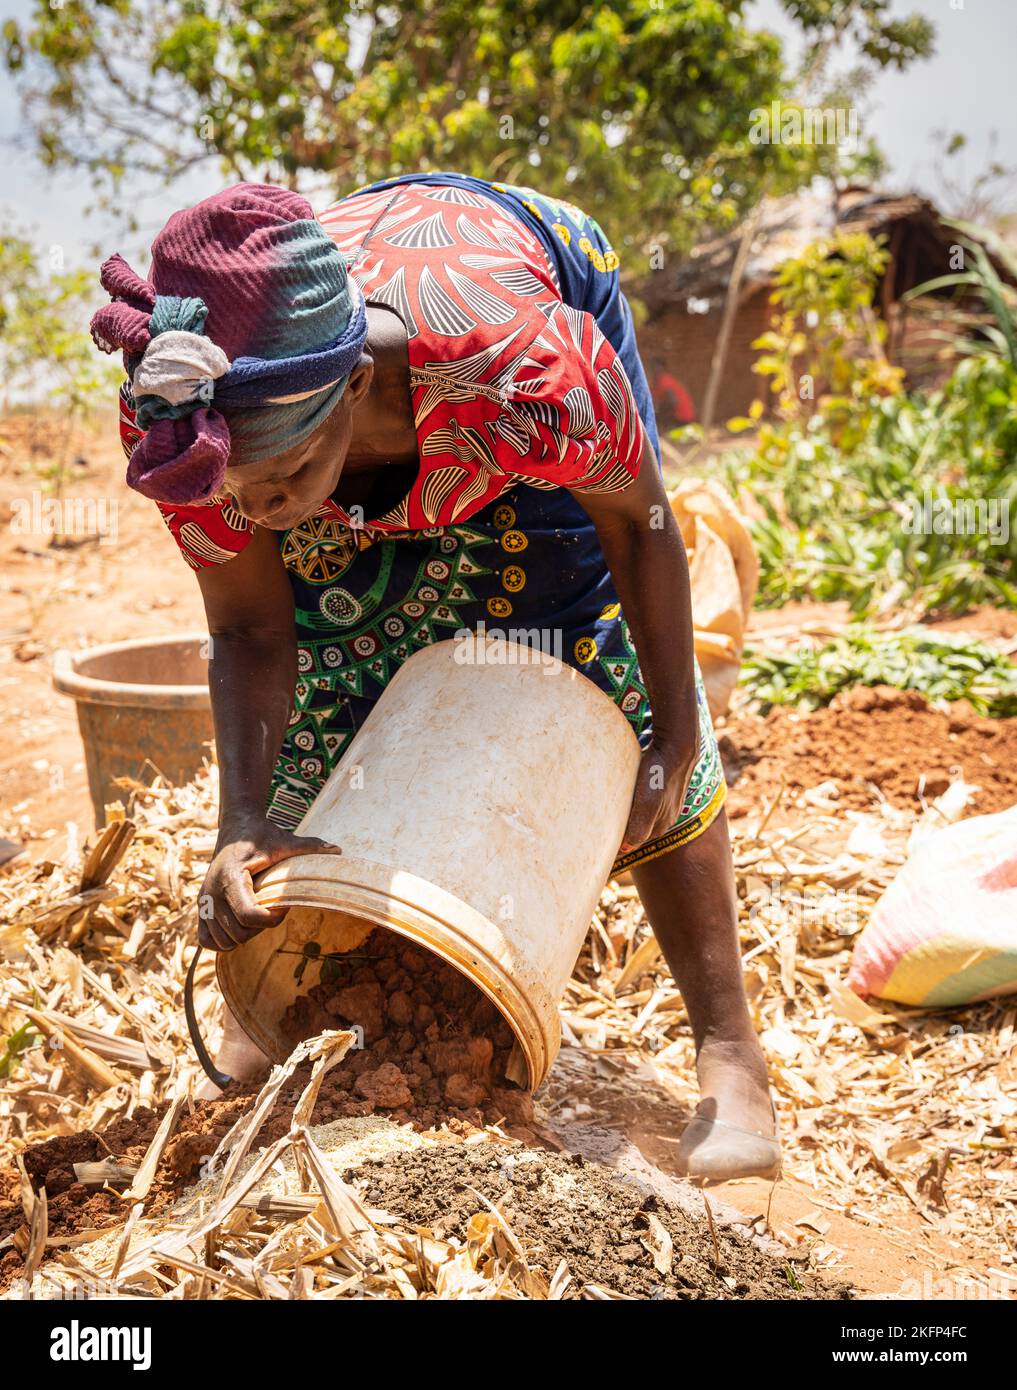 Une agricultrice montre comment fabriquer du fumier bokashi dans le cadre d'un programme de conservation agricole dans les zones rurales du Malawi Banque D'Images